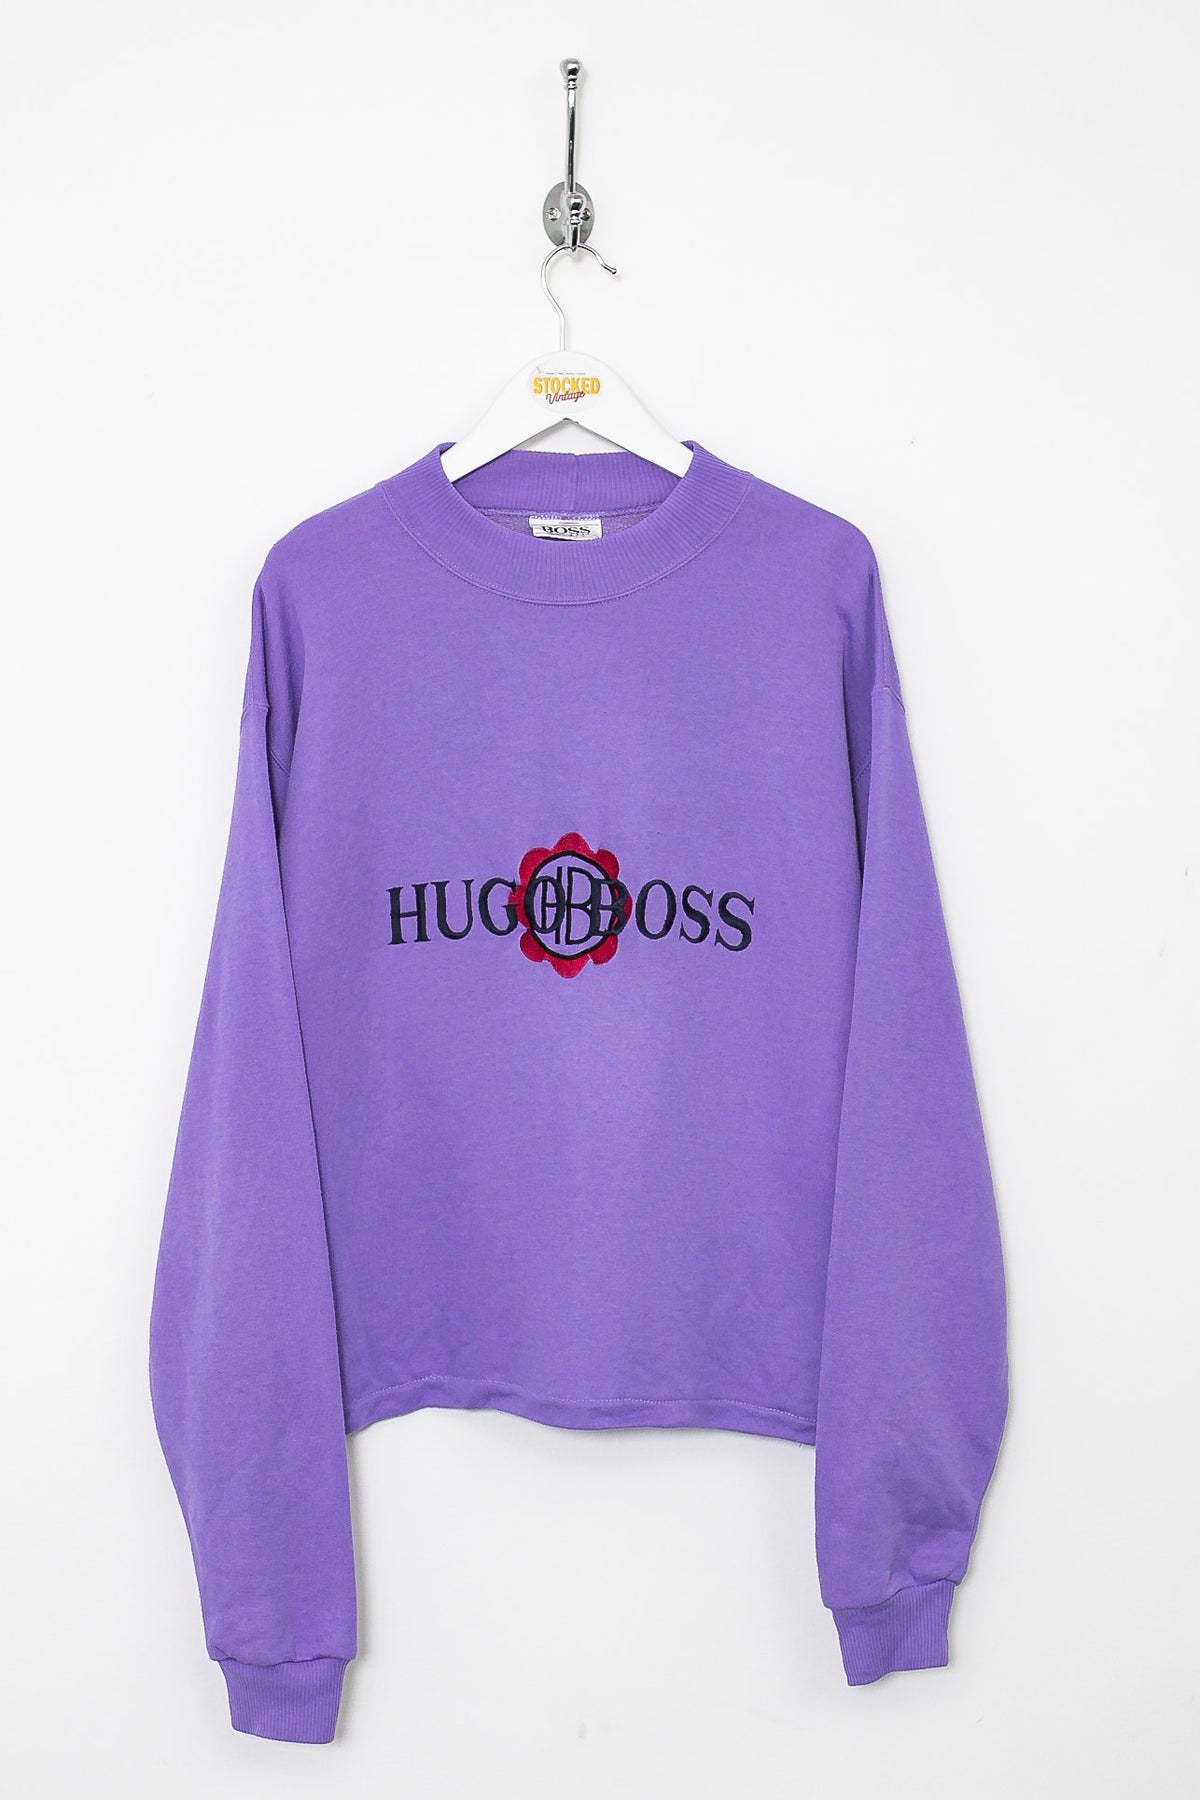 Womens 90s Hugo Boss Sweatshirt (M)